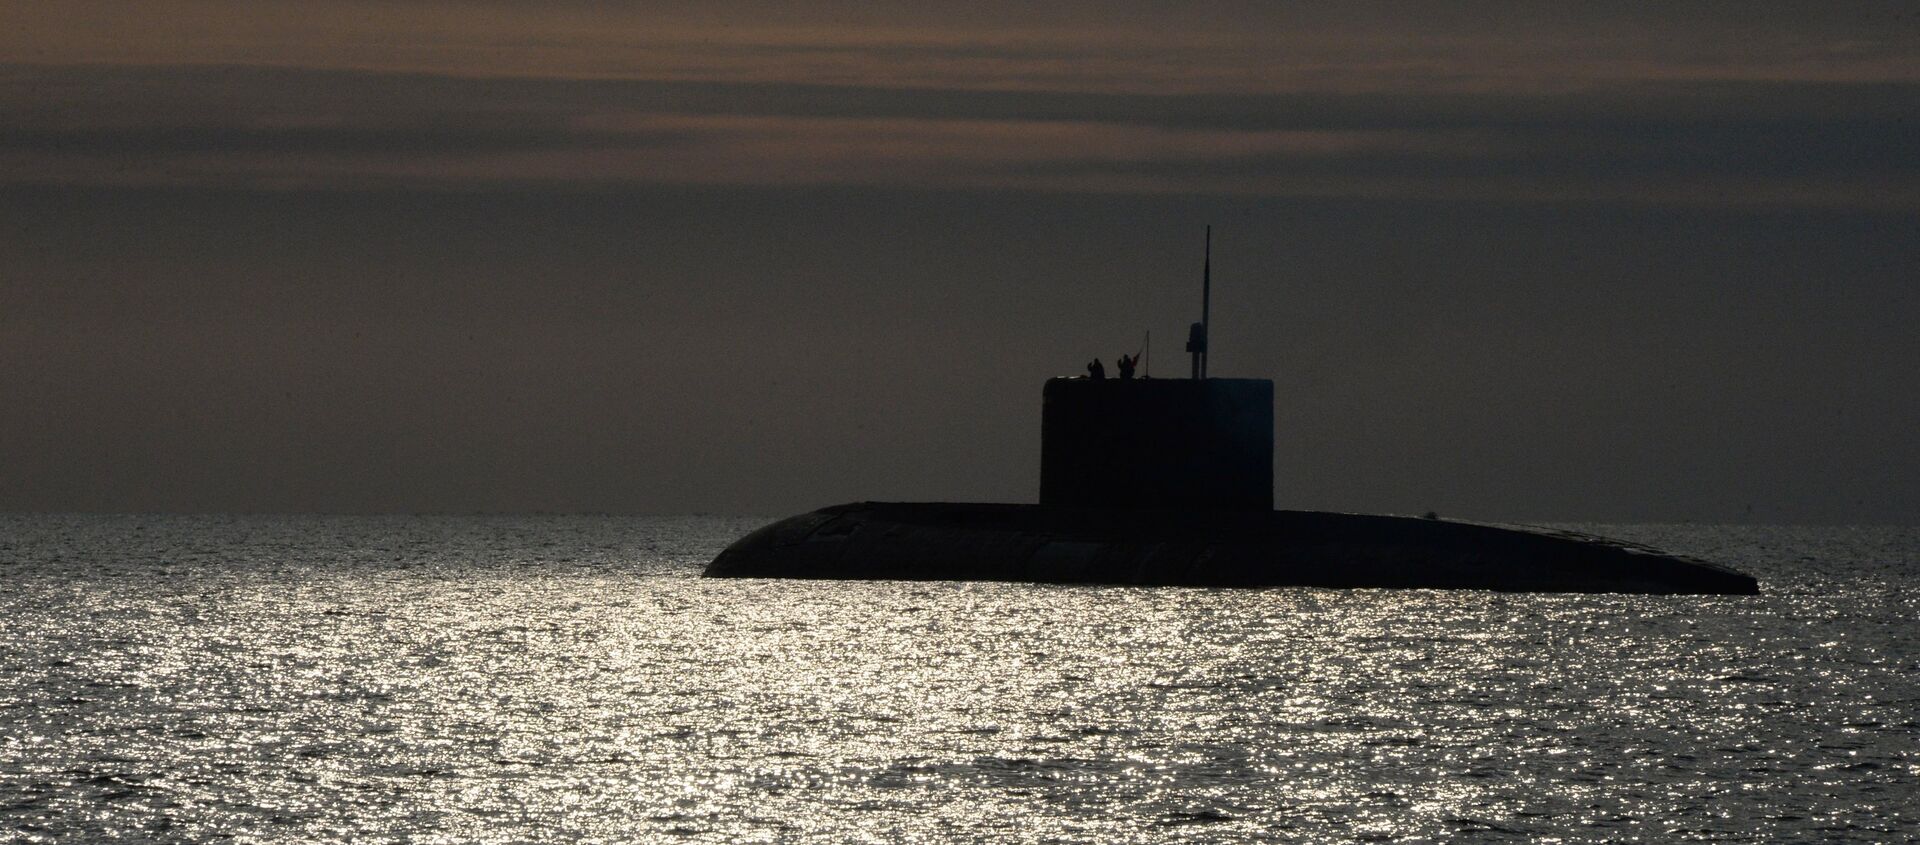 Status-6 insansız nükleer denizaltı (proje aşamasında) - Sputnik Türkiye, 1920, 26.03.2019